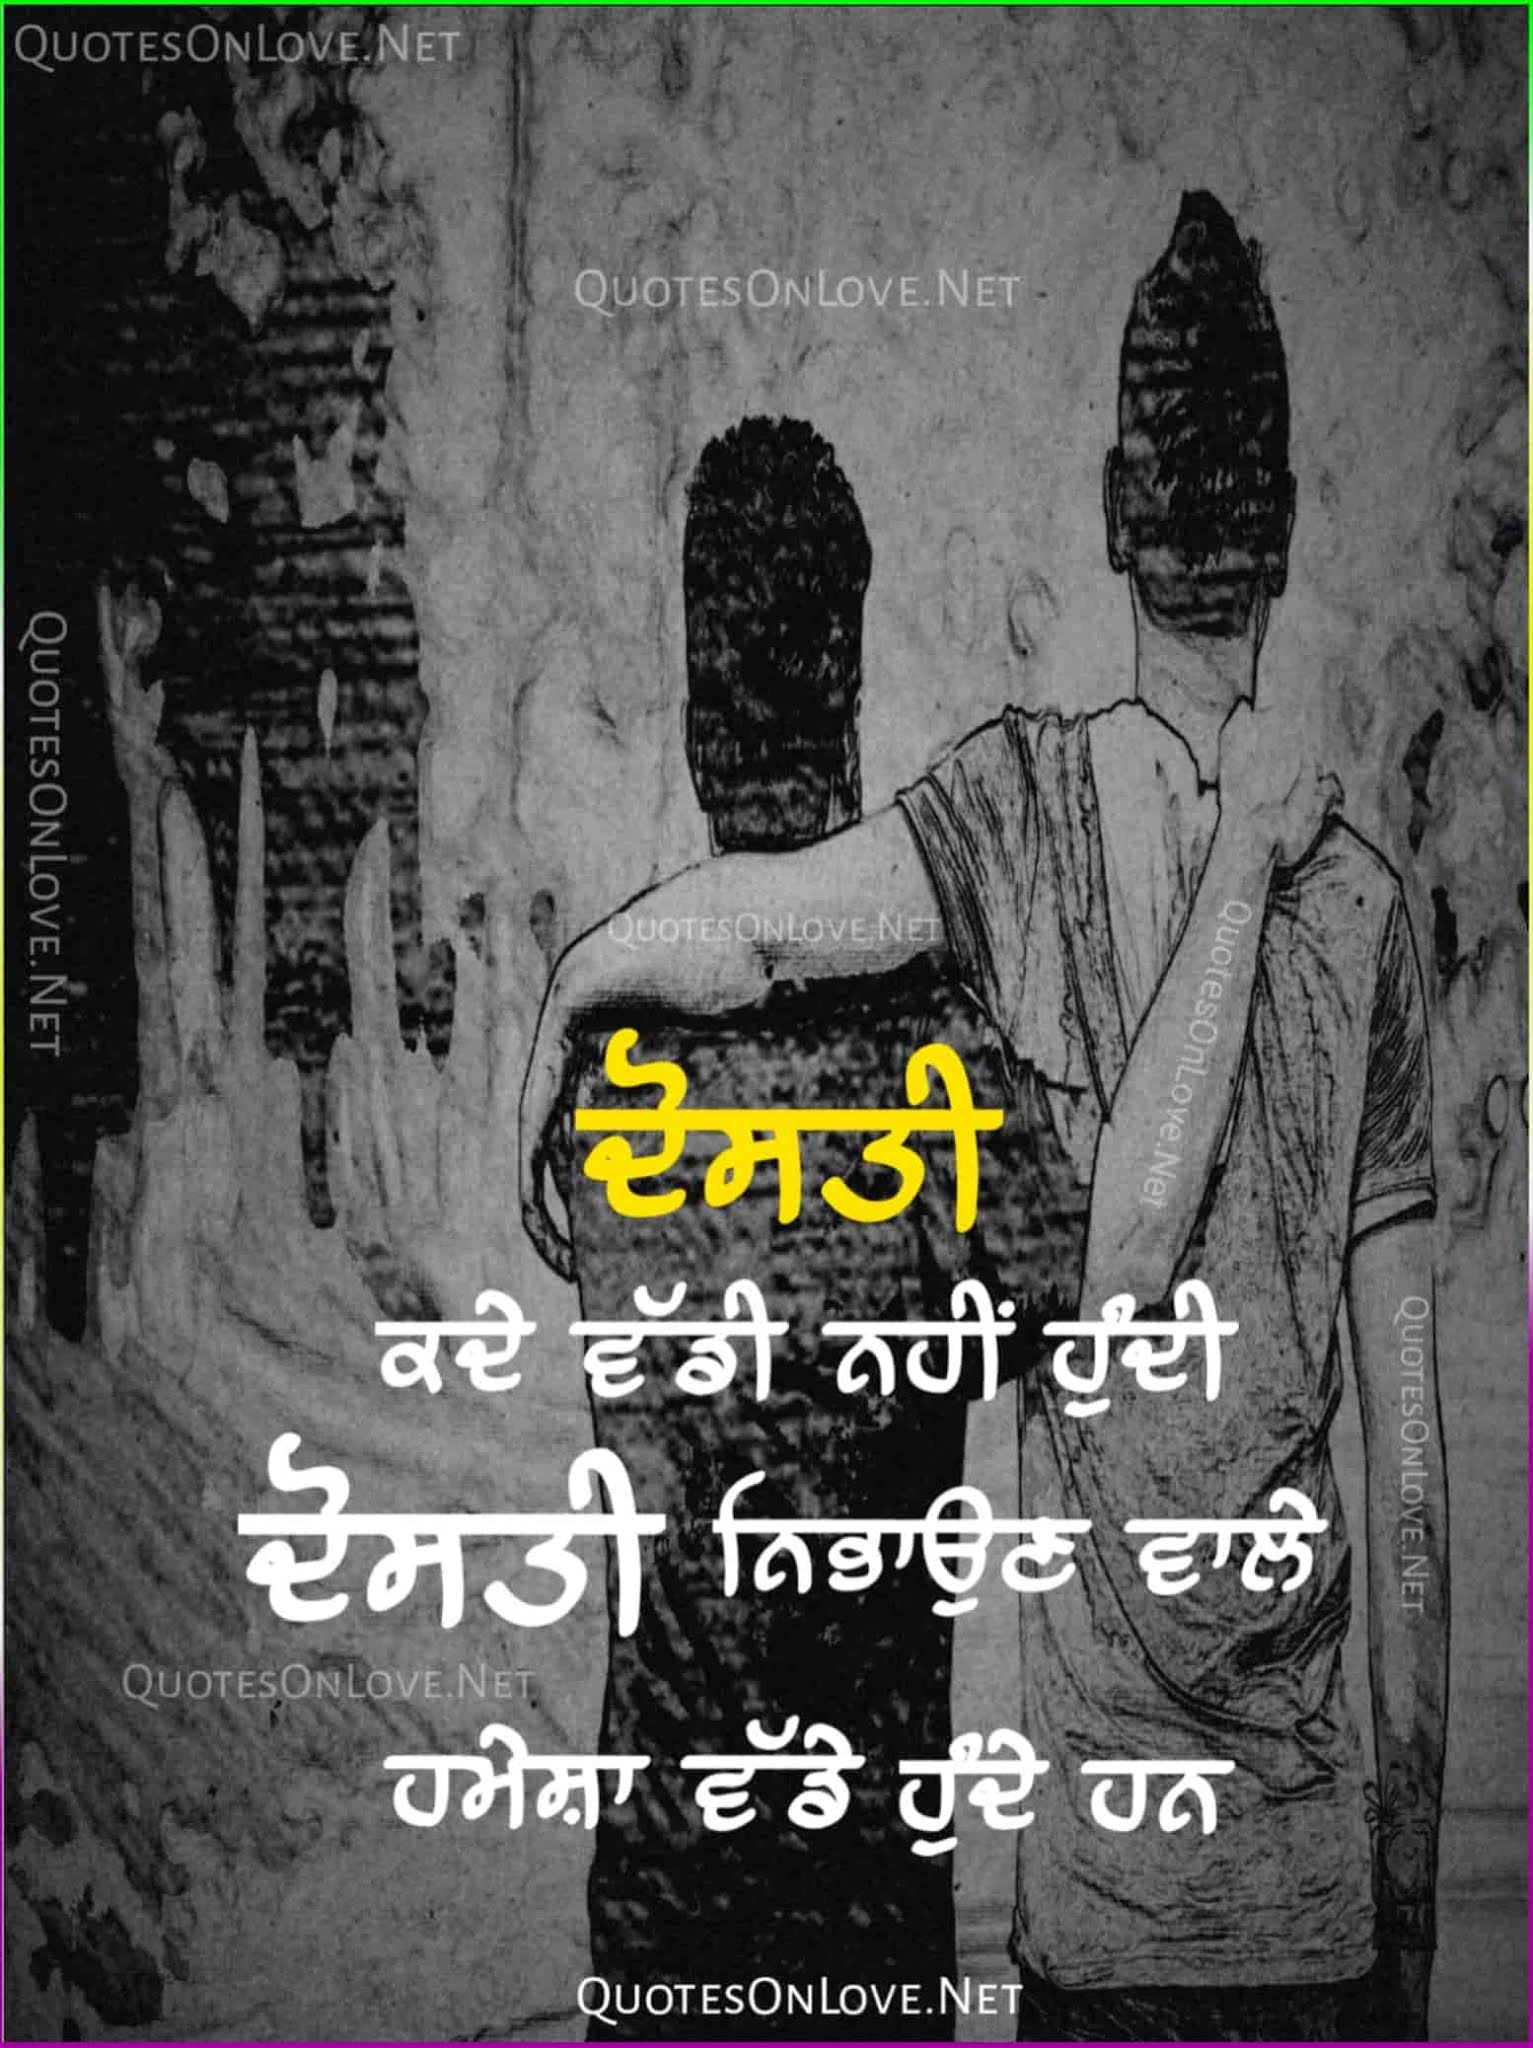 Emotional Sad Shayari Punjabi In Hindi For Life Girl